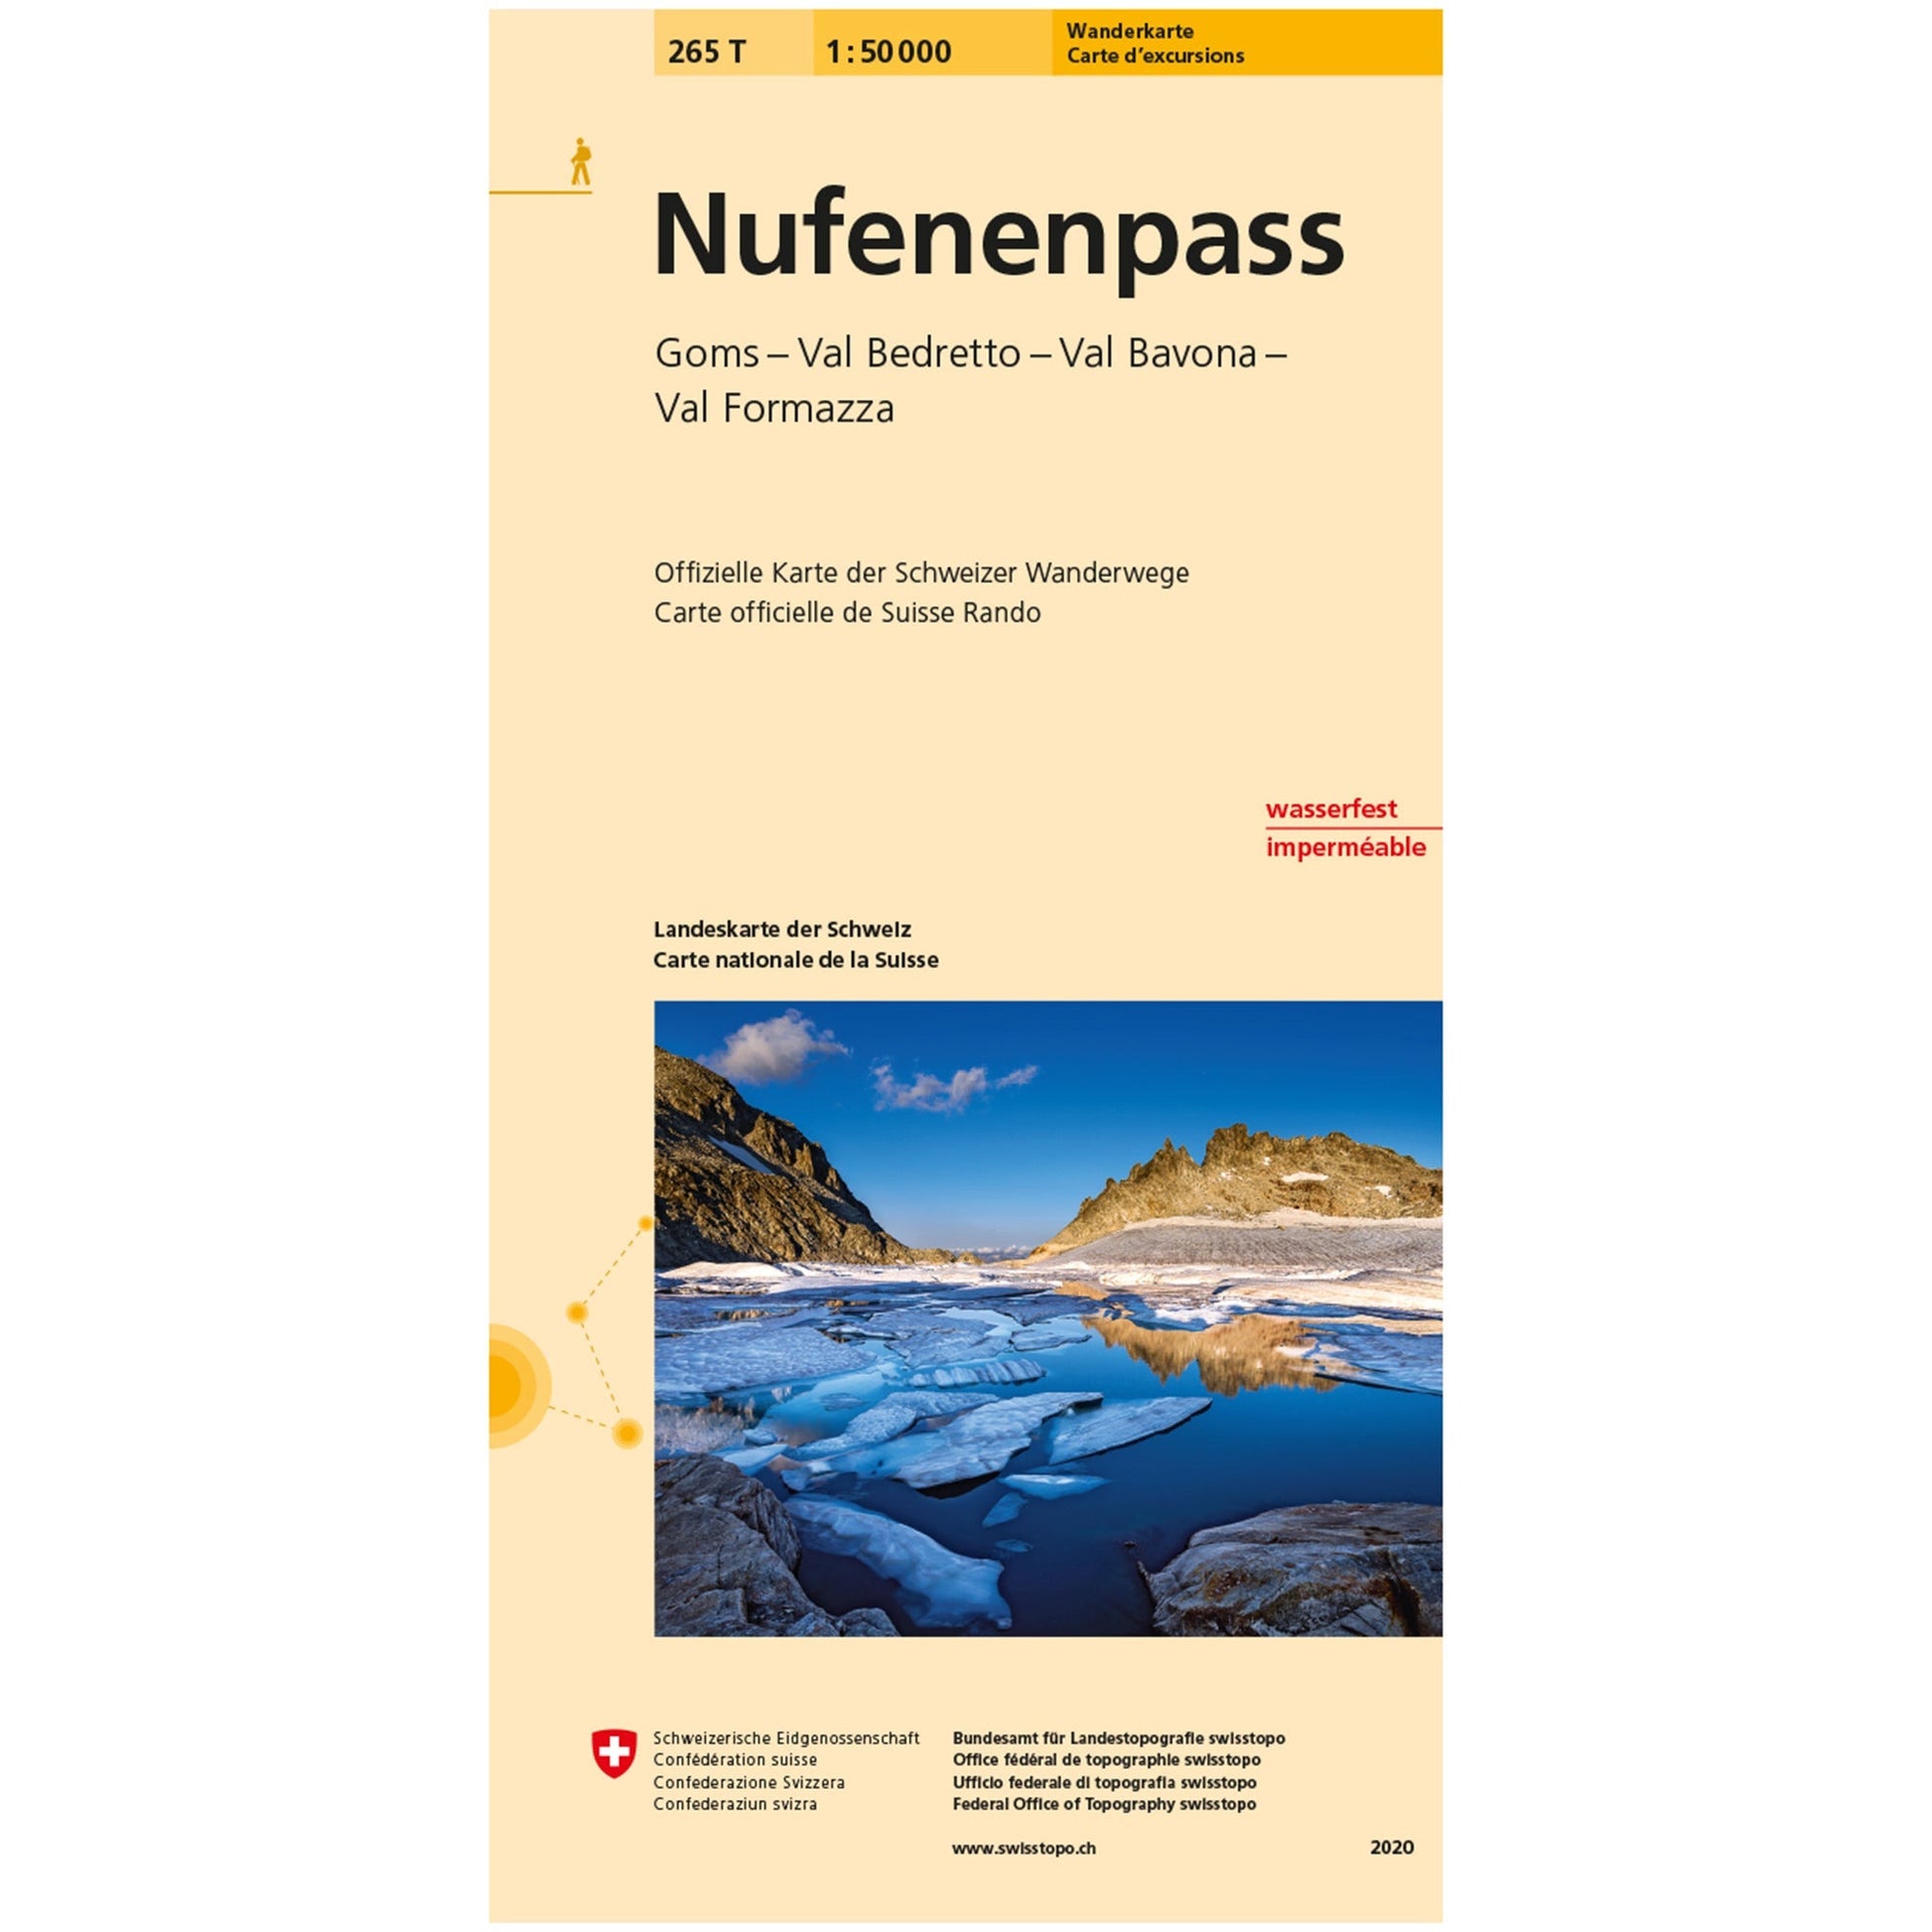 Wanderkarten Swiss Topo 1:50000 Wanderkarten Swisstopo 265T Nufenenpass 